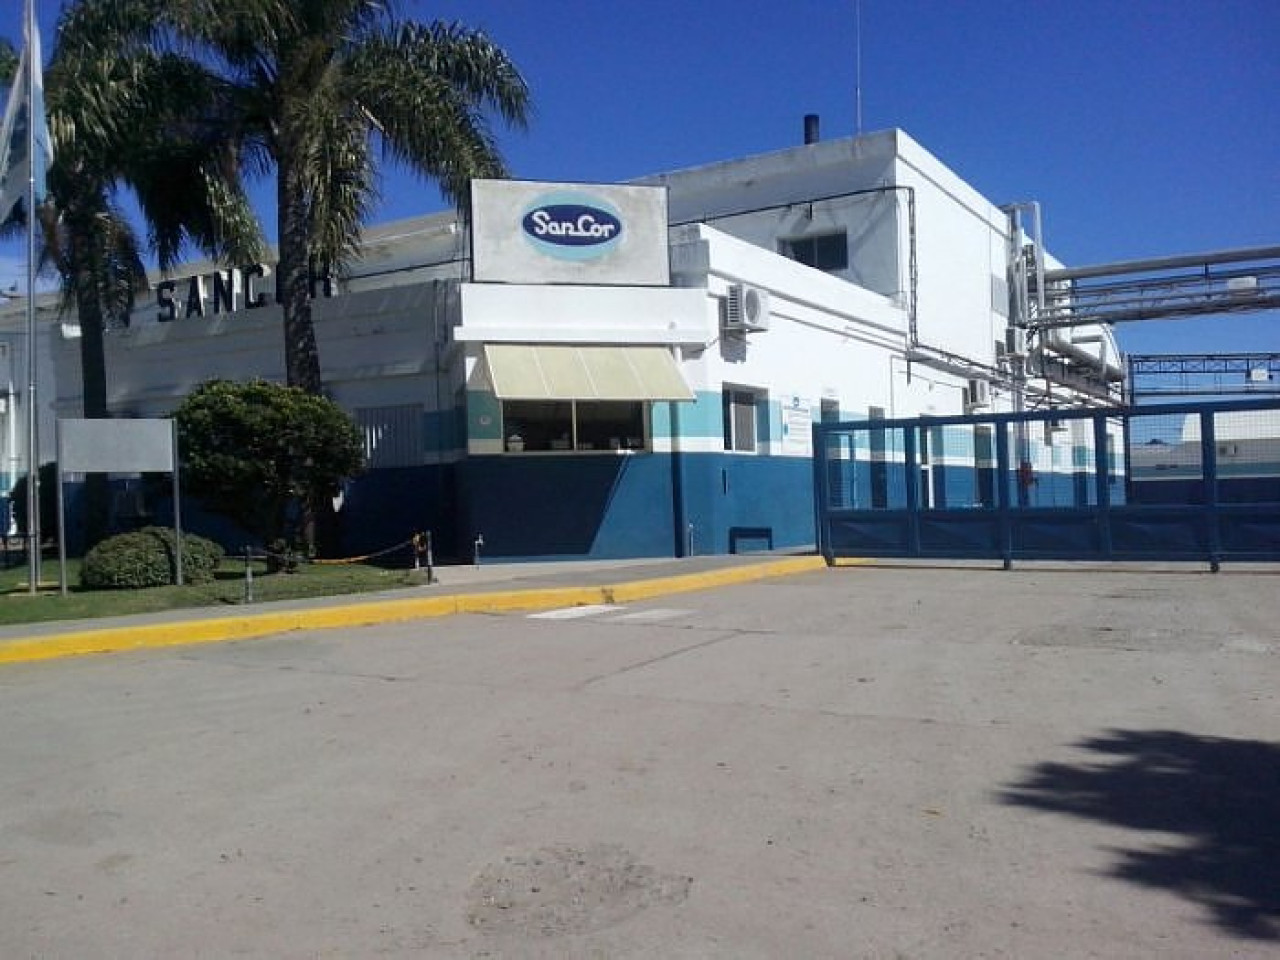 Planta de SanCor en San Guillermo, Santa Fe. Foto: Radio Belgrano.